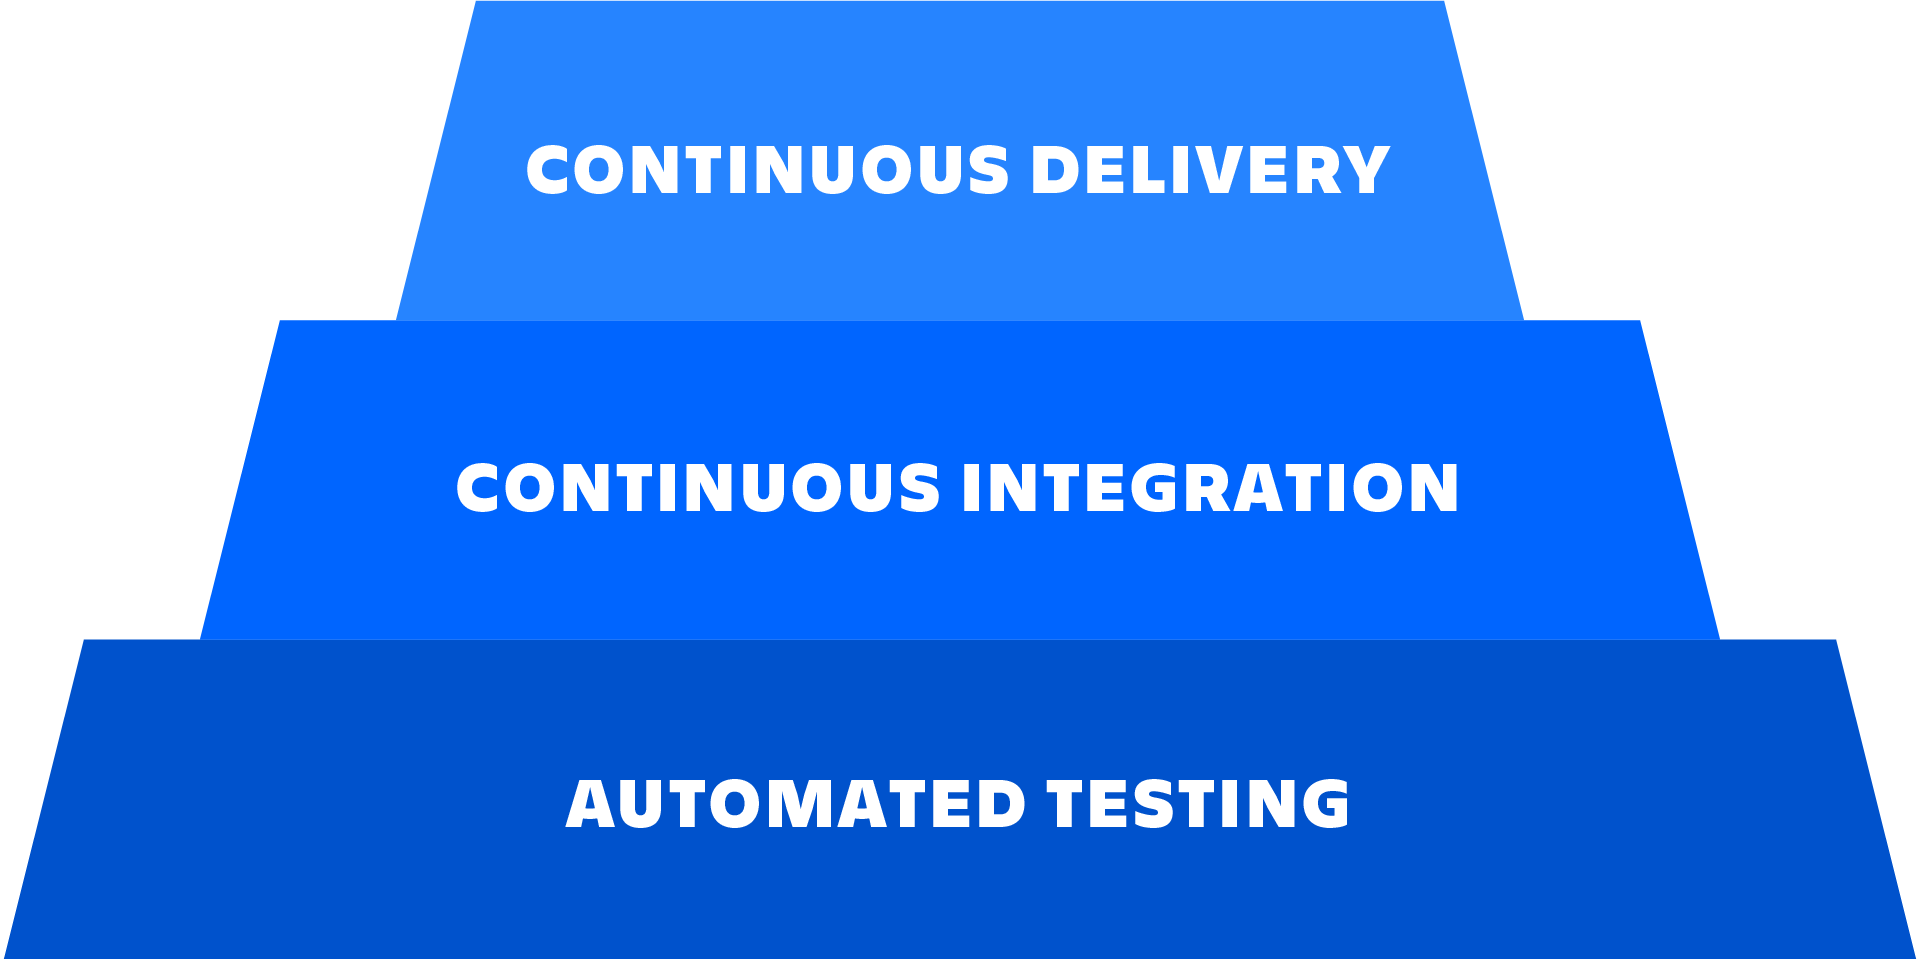 Un diagrama en el que se describe la relación entre las pruebas automatizadas, la integración continua y la entrega continua.